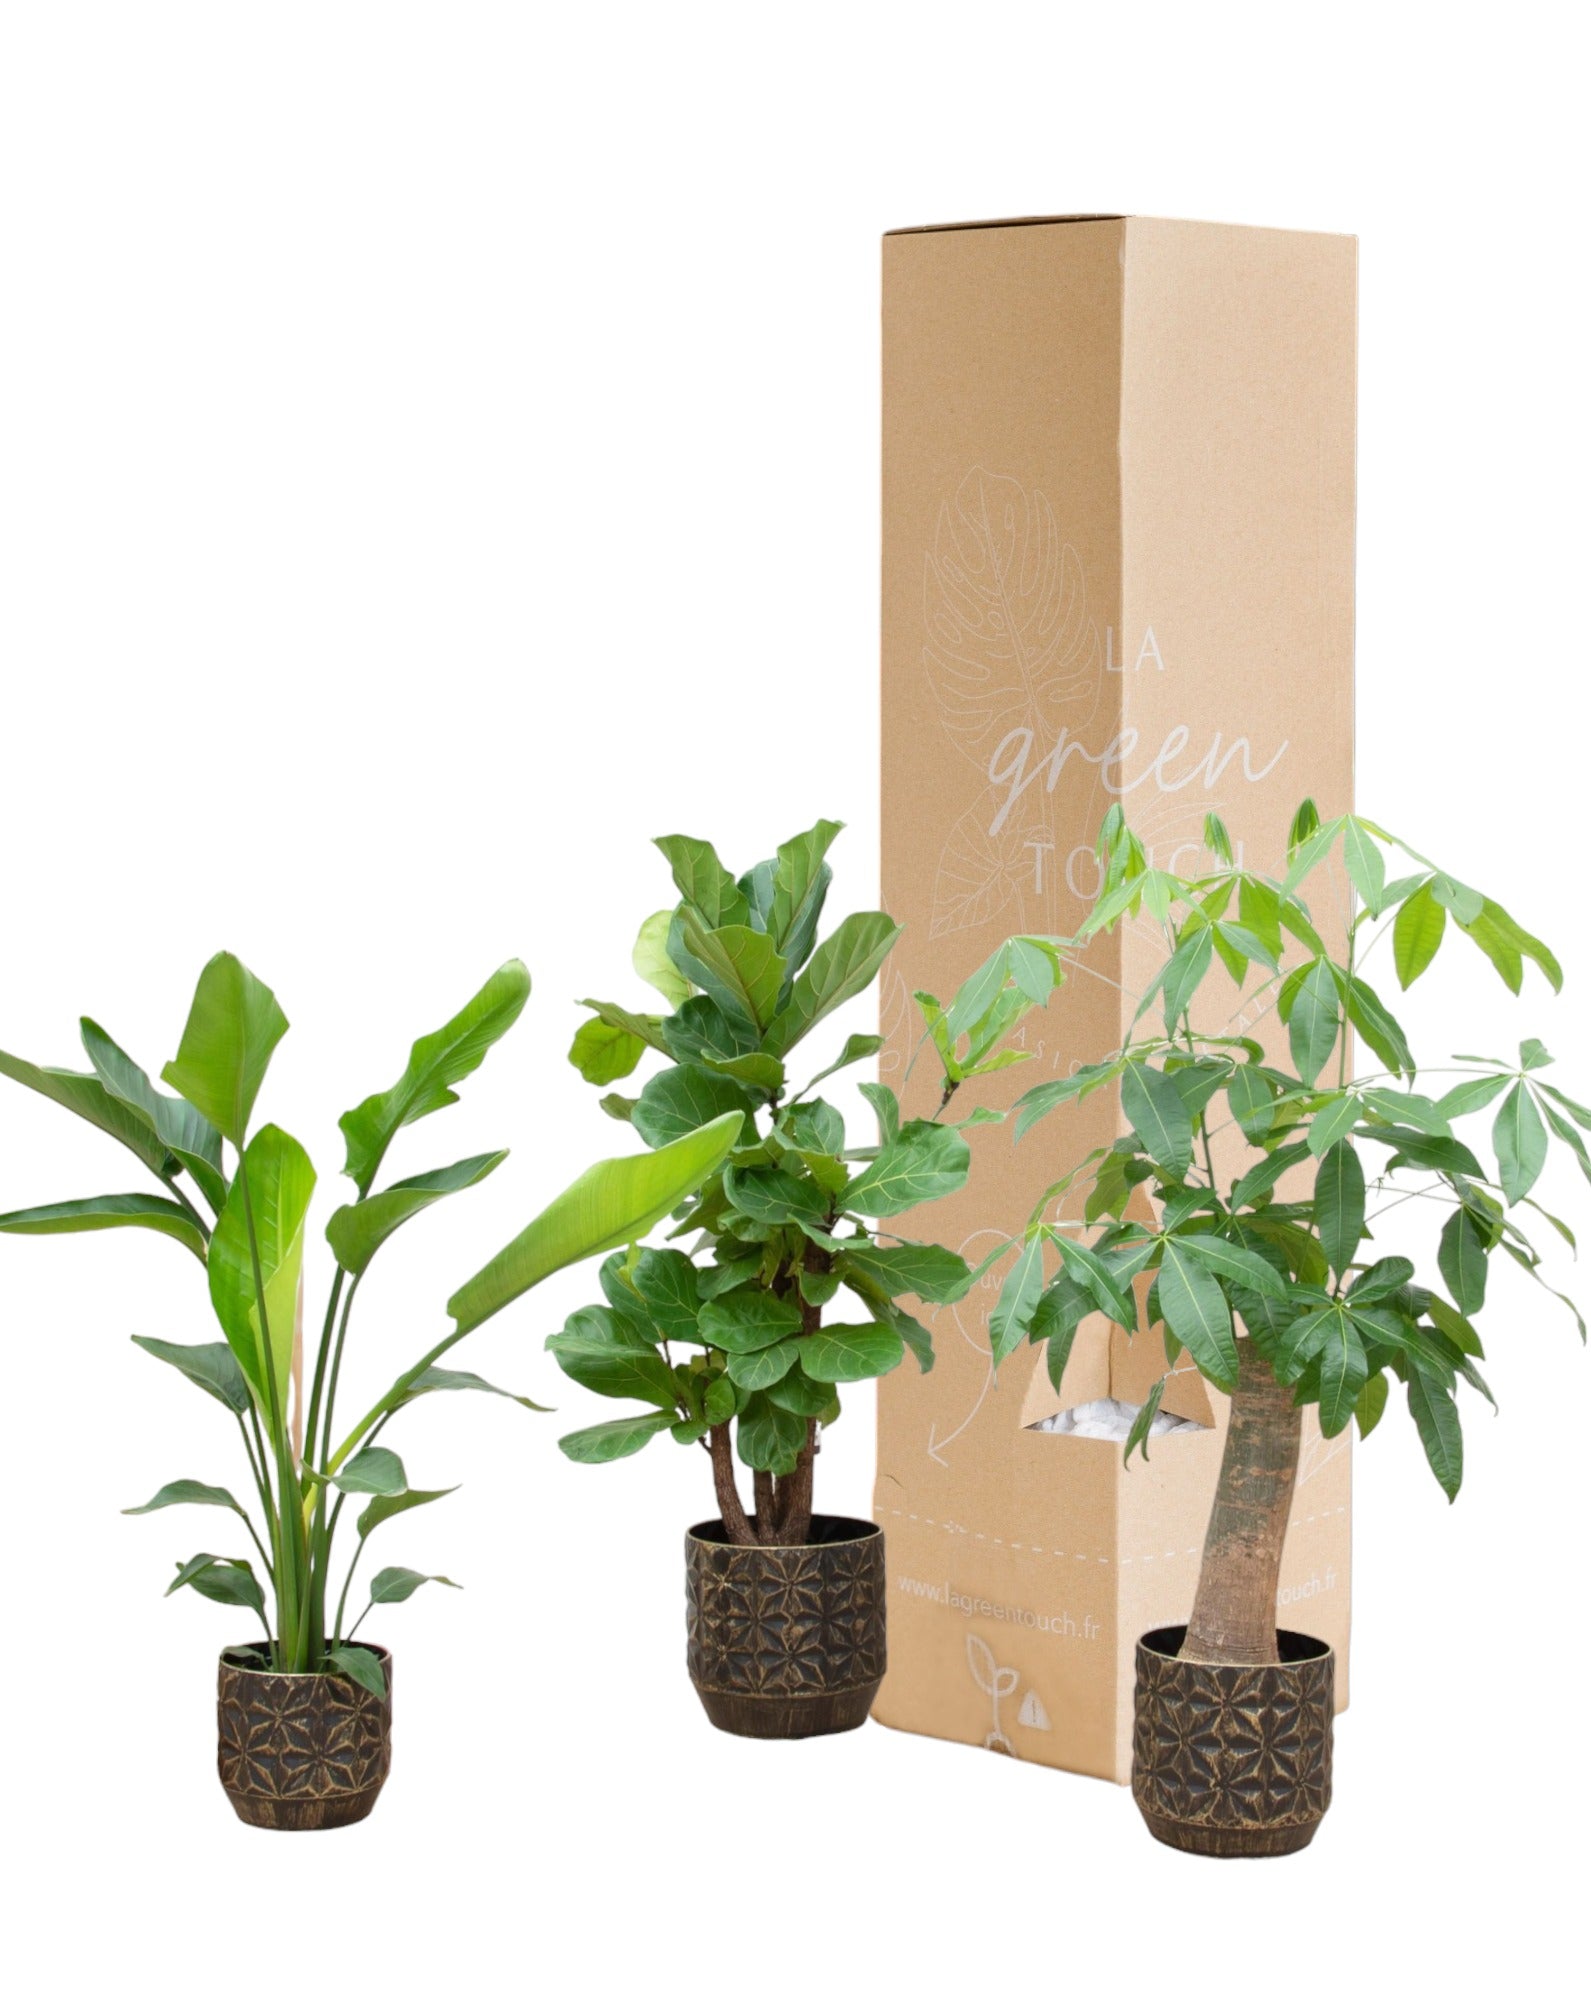 Plante d'intérieur - strelitzia nicolai, pachira aquatica, ficus lyrata - lot de 3 plantes - coffret cadeau 110cm